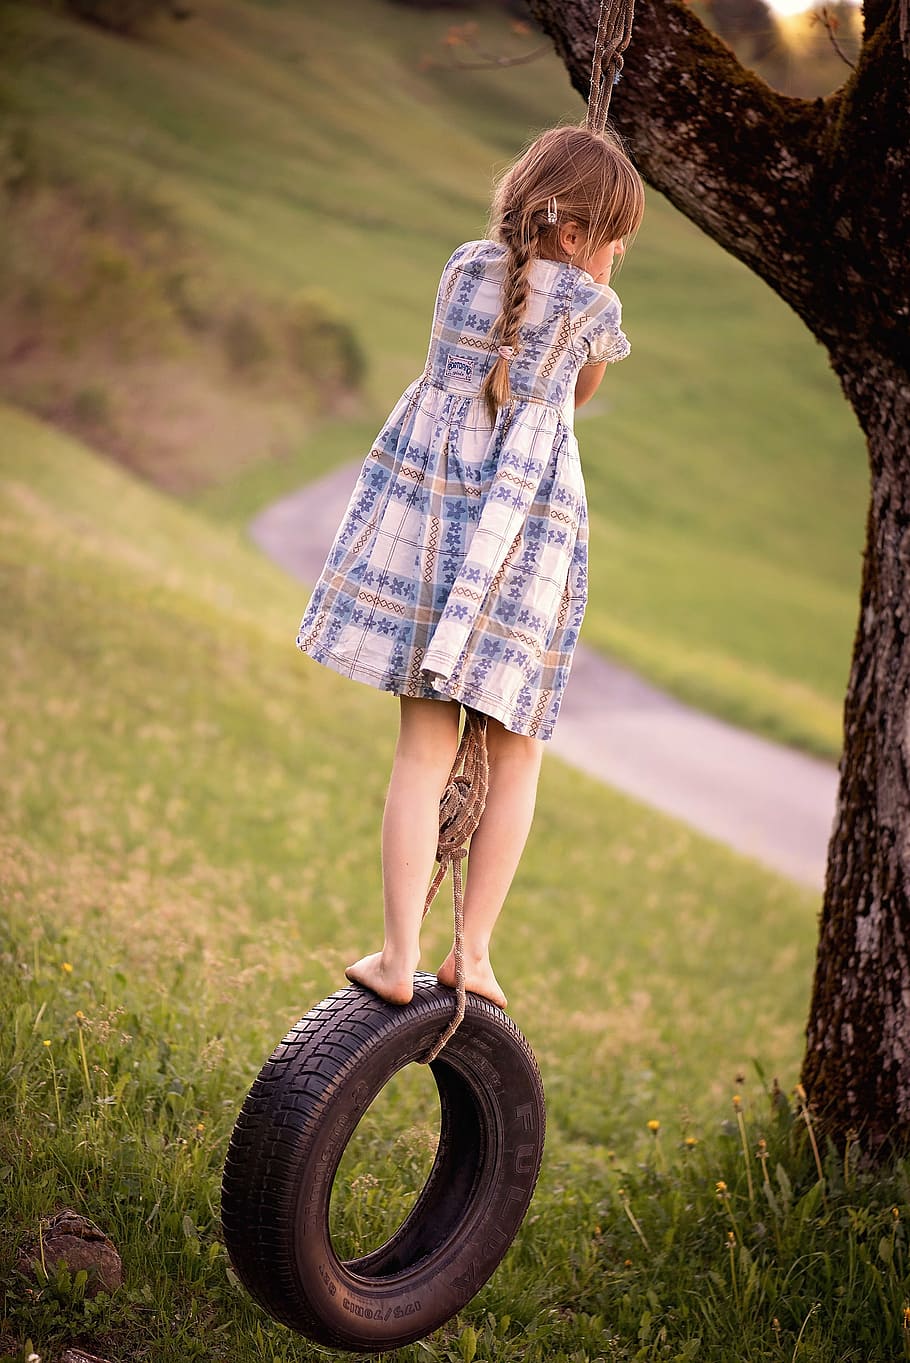 menina, passeio, balanço de pneu de veículo, humano, pessoa, criança, loiro, cabelos longos, balanço, balanço de pneu